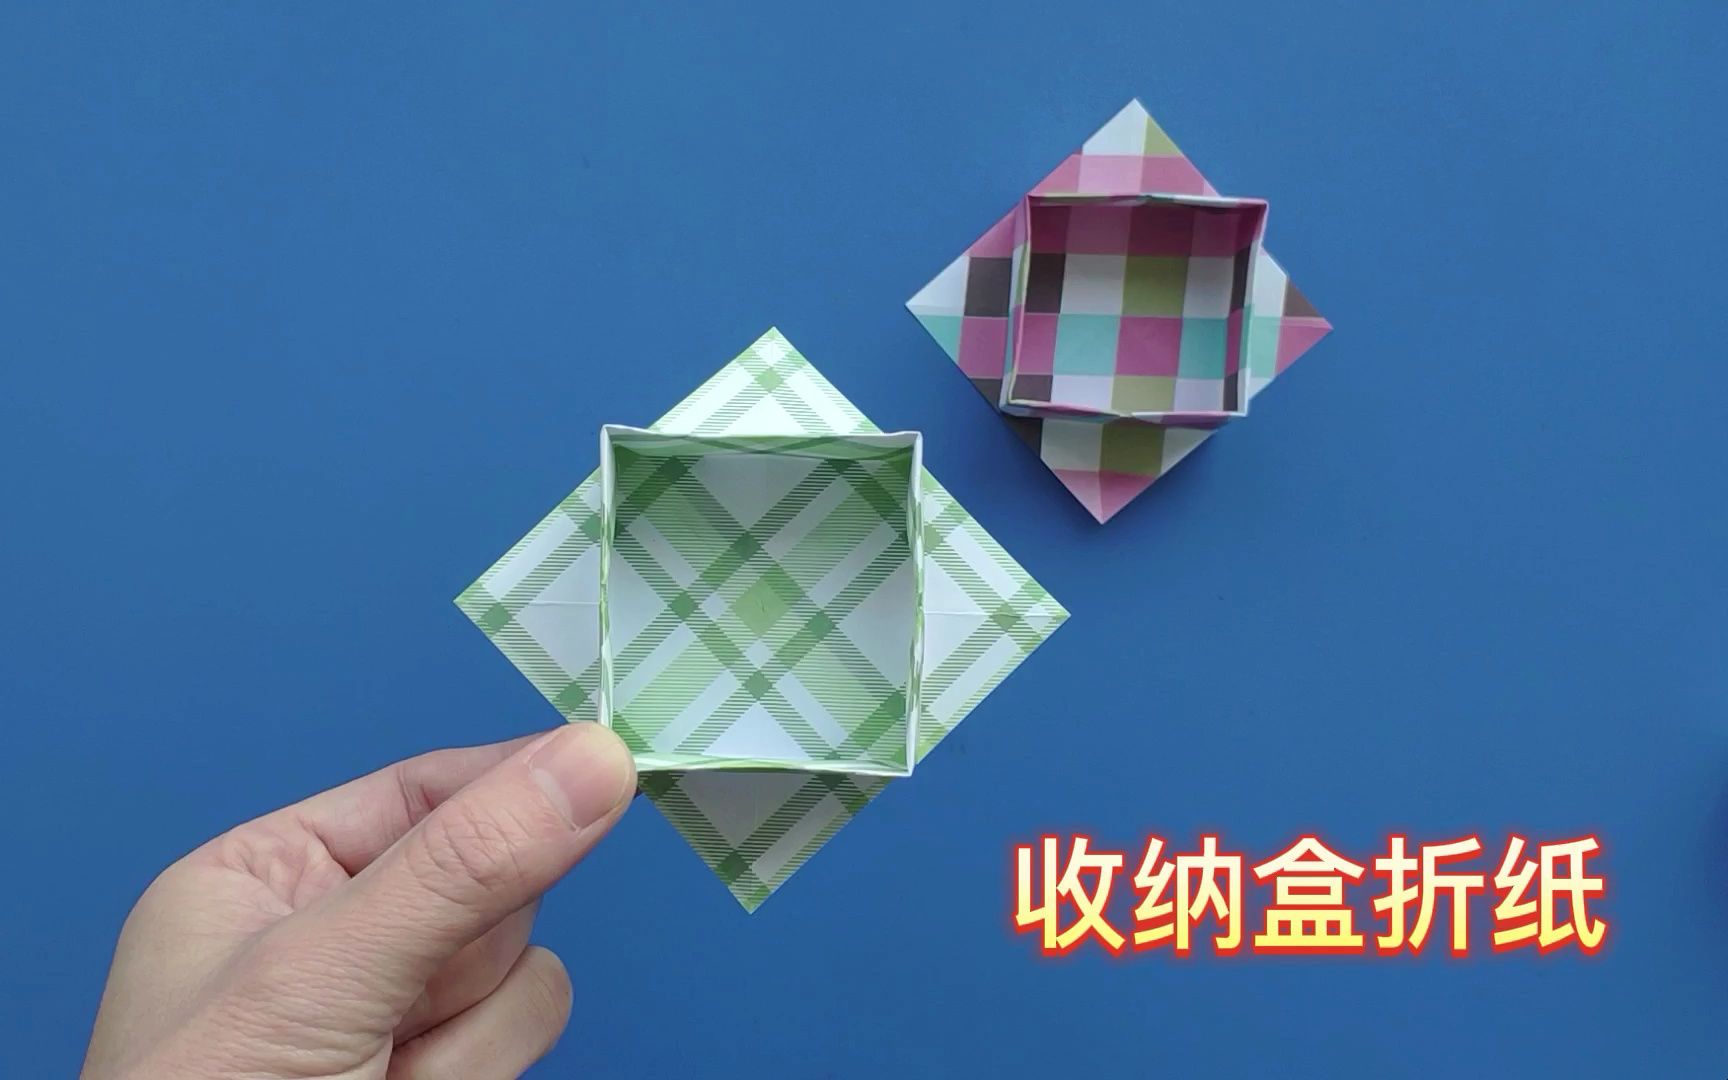 桌面收纳盒折法教程,一张正方形纸折简单盒子